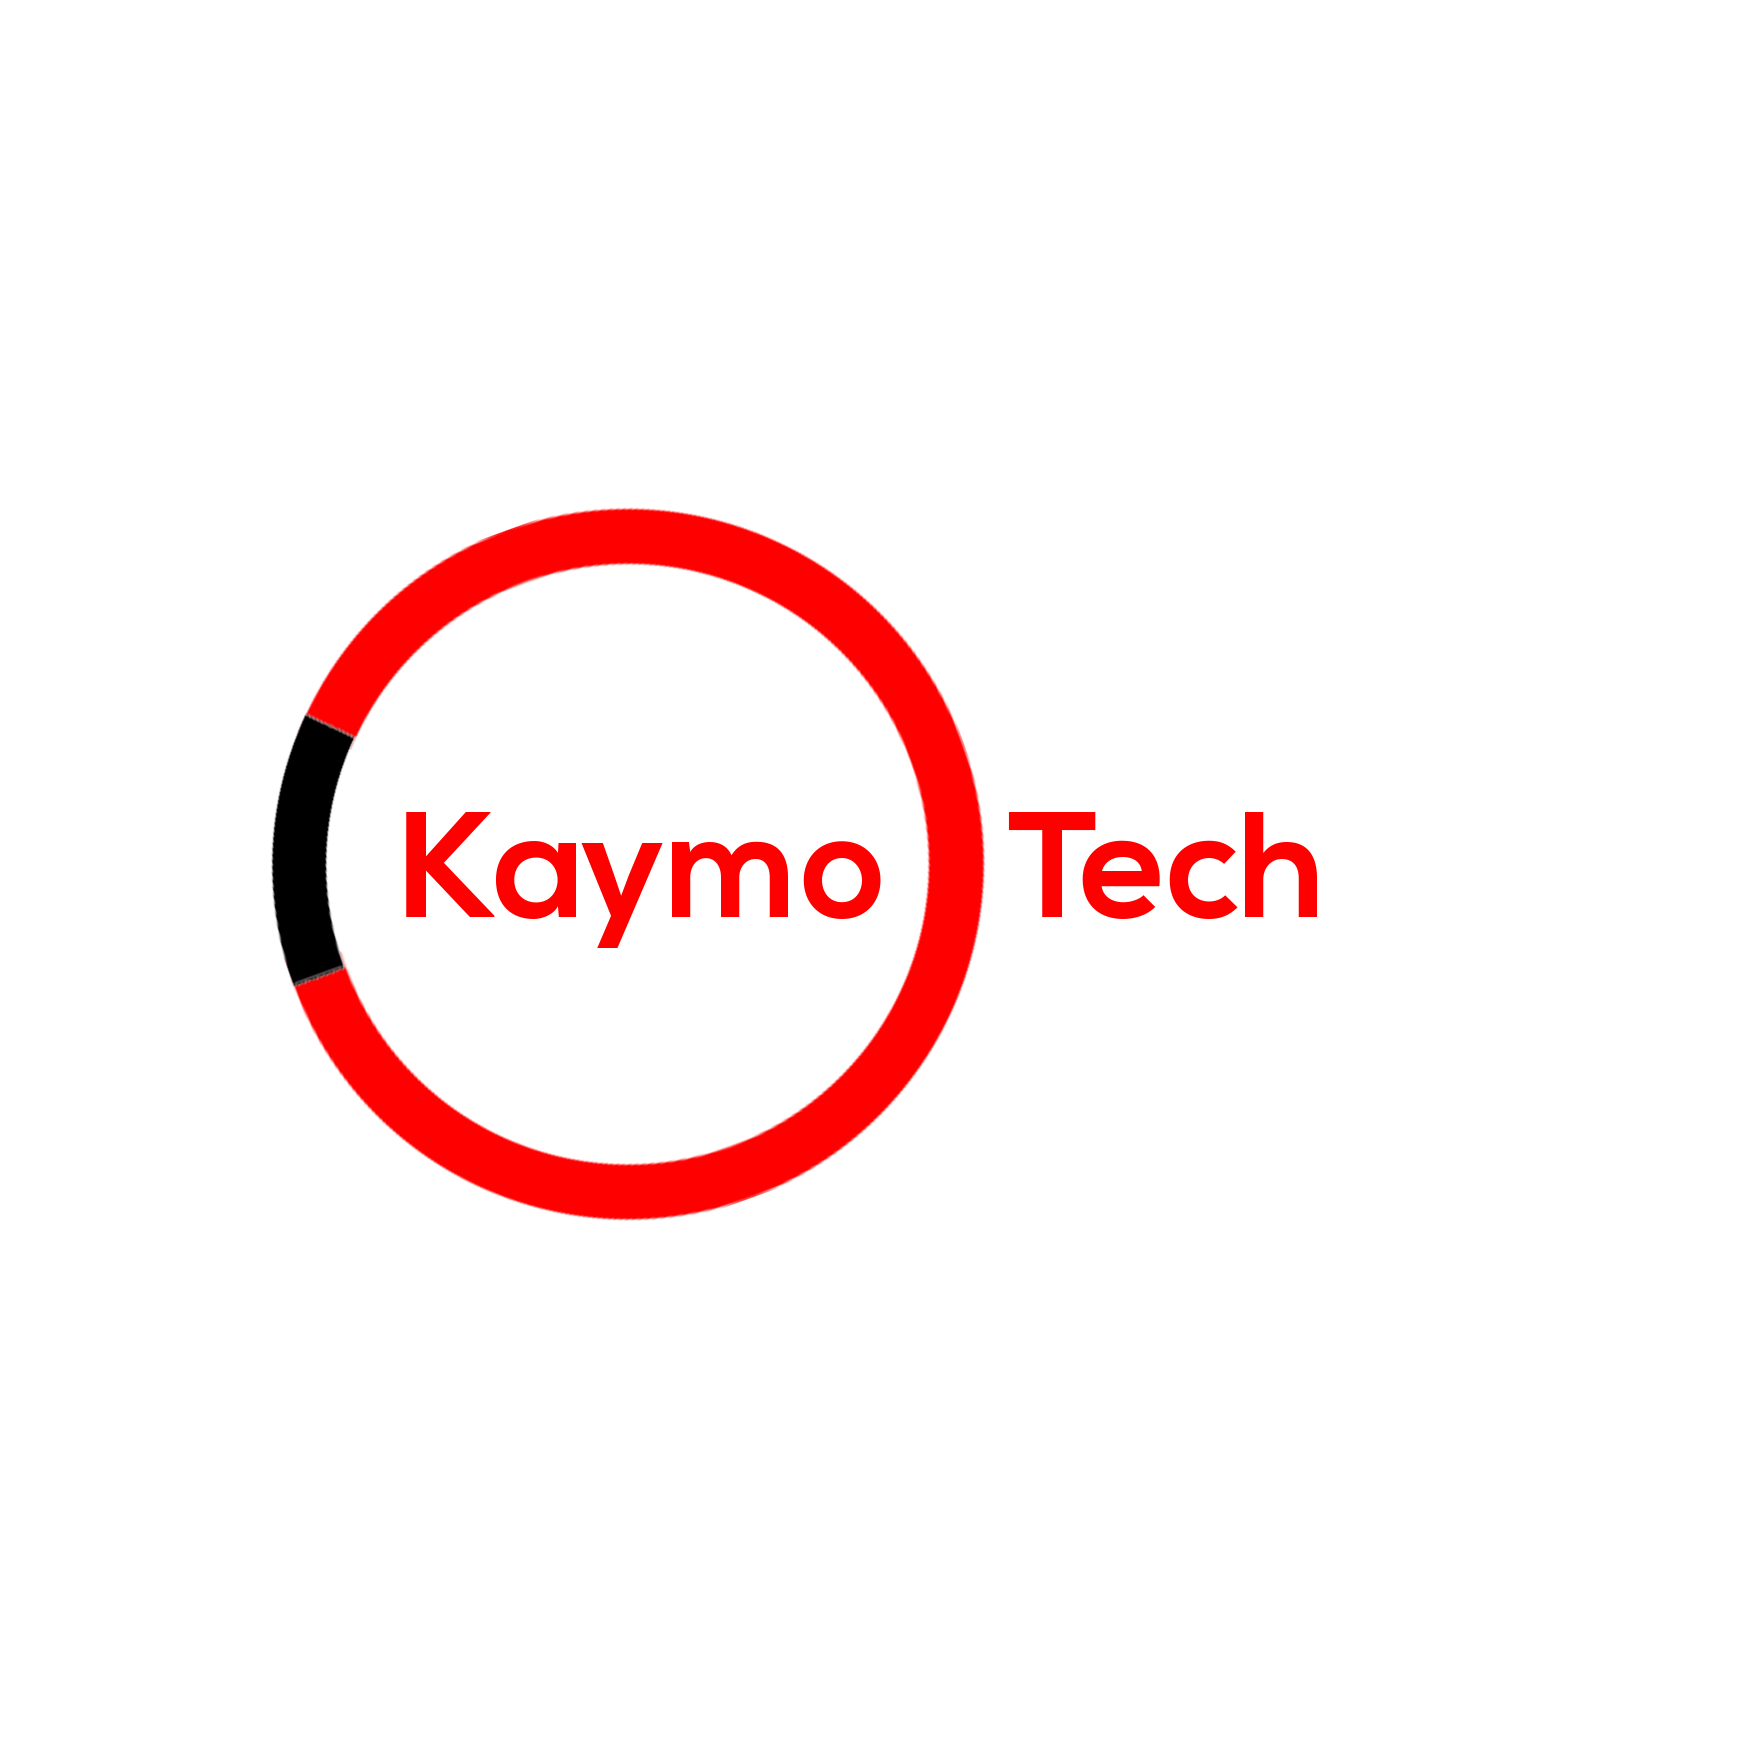 Kaymo Tech (Pty) Ltd